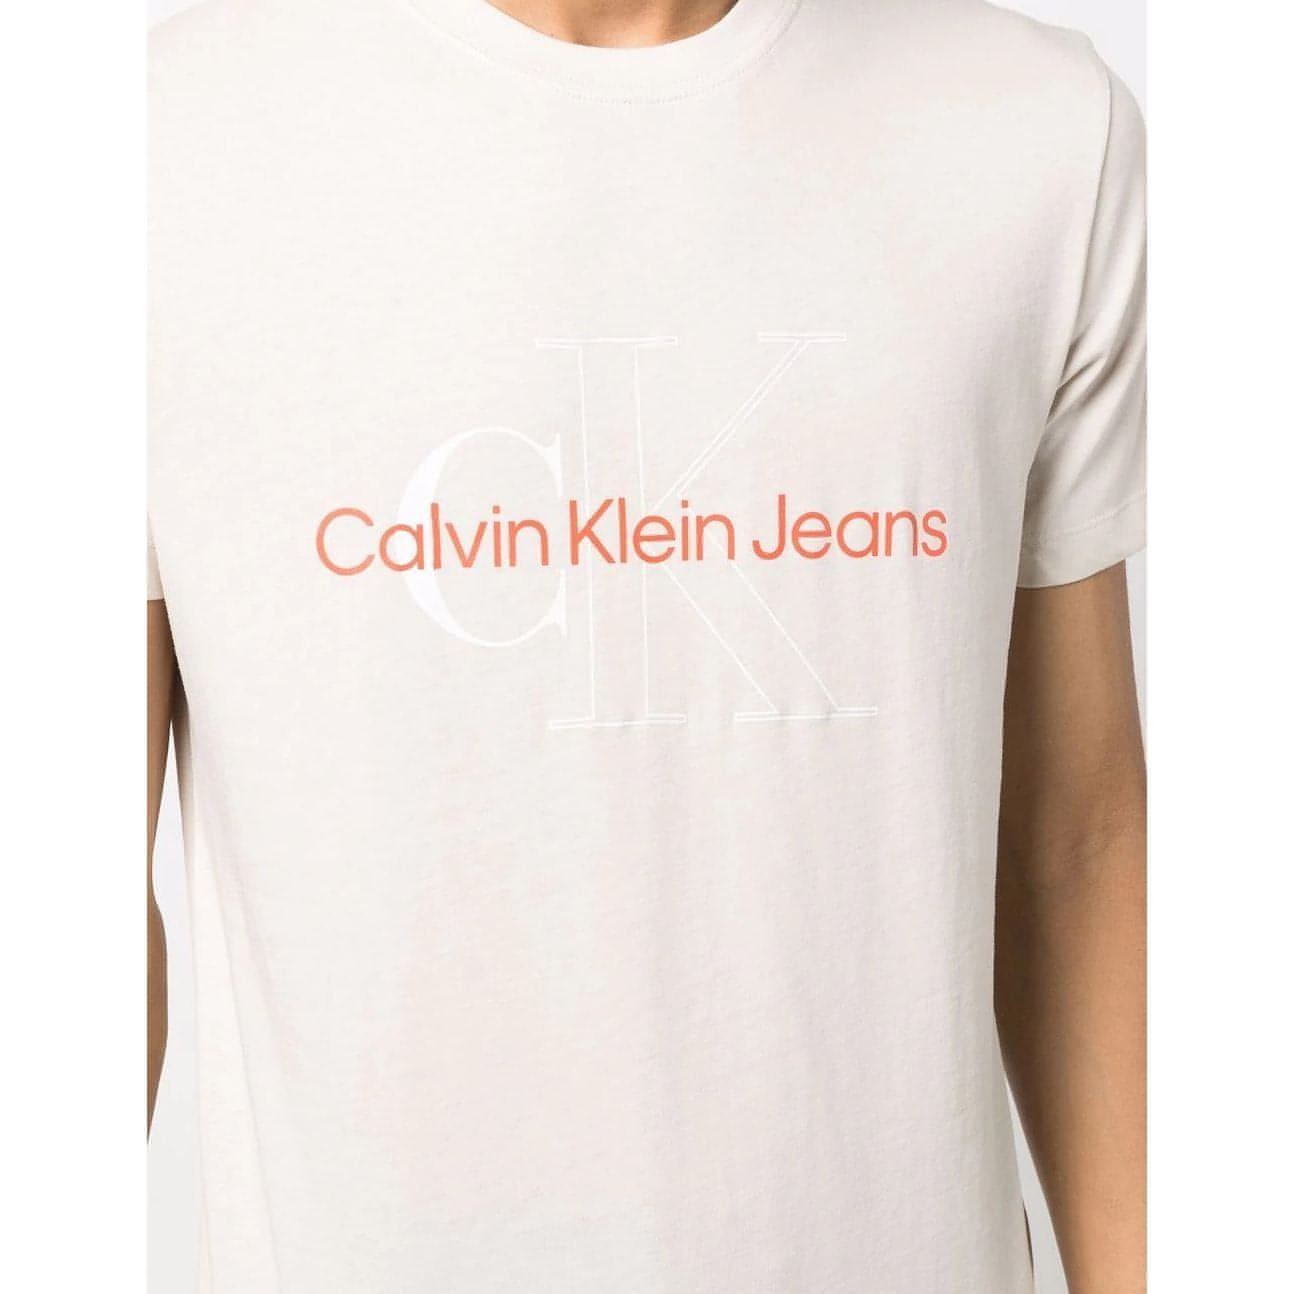 CALVIN KLEIN JEANS vyriški kreminiai marškinėliai